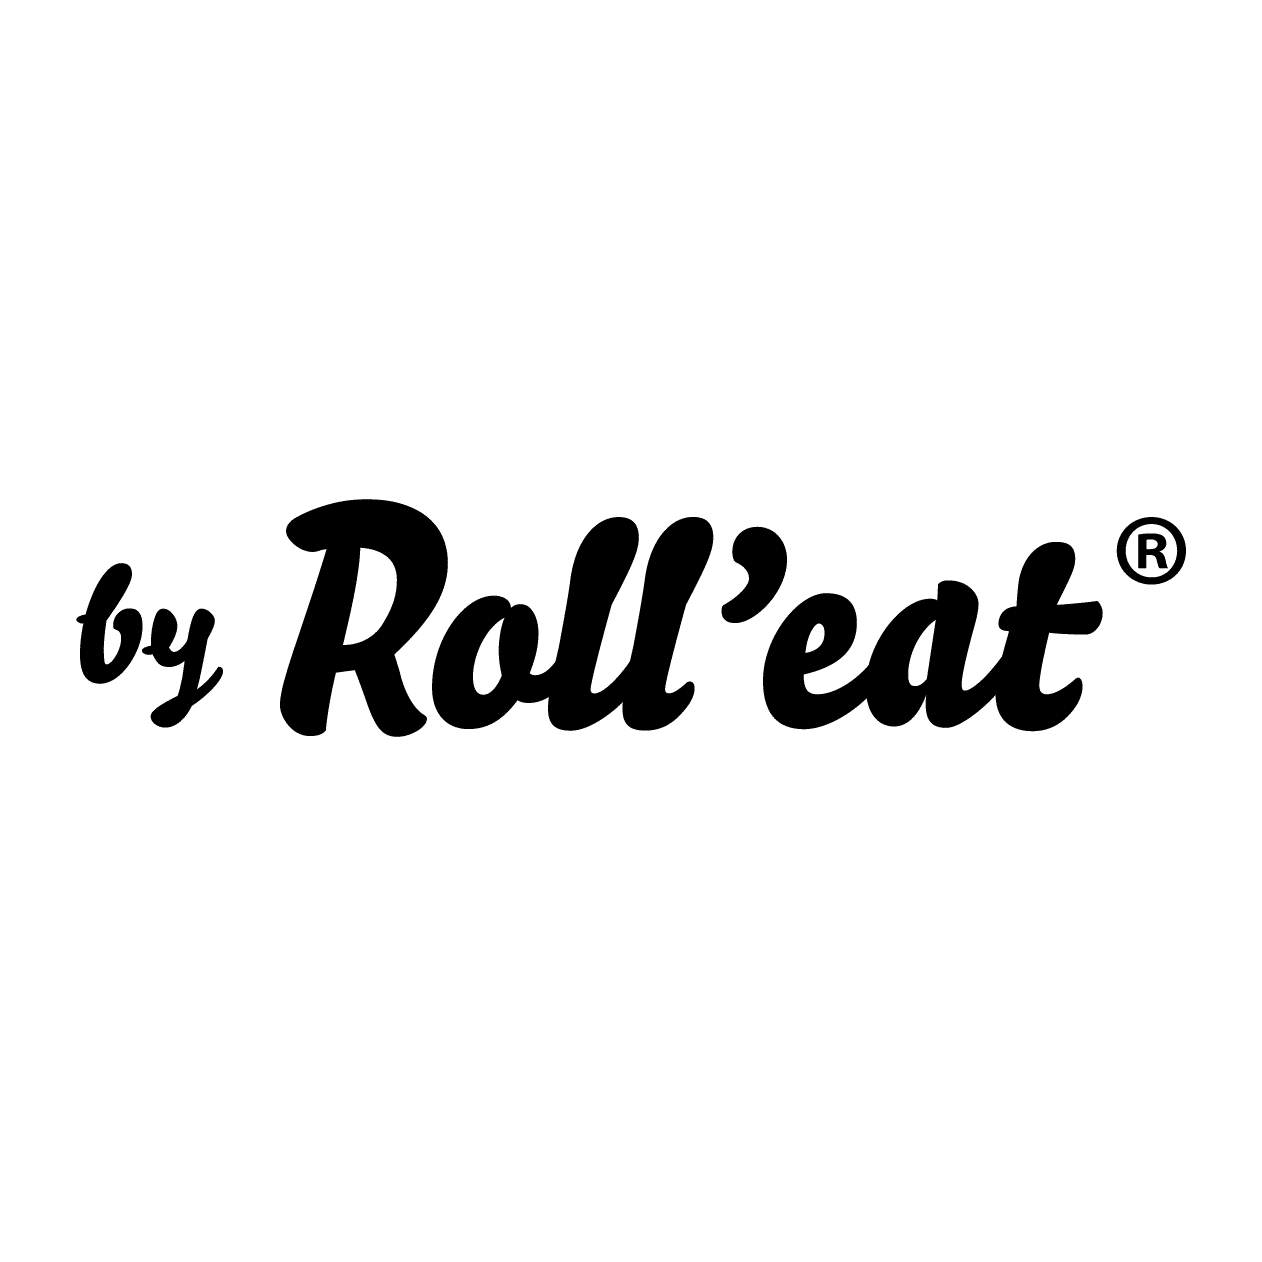 (c) Rolleat.com